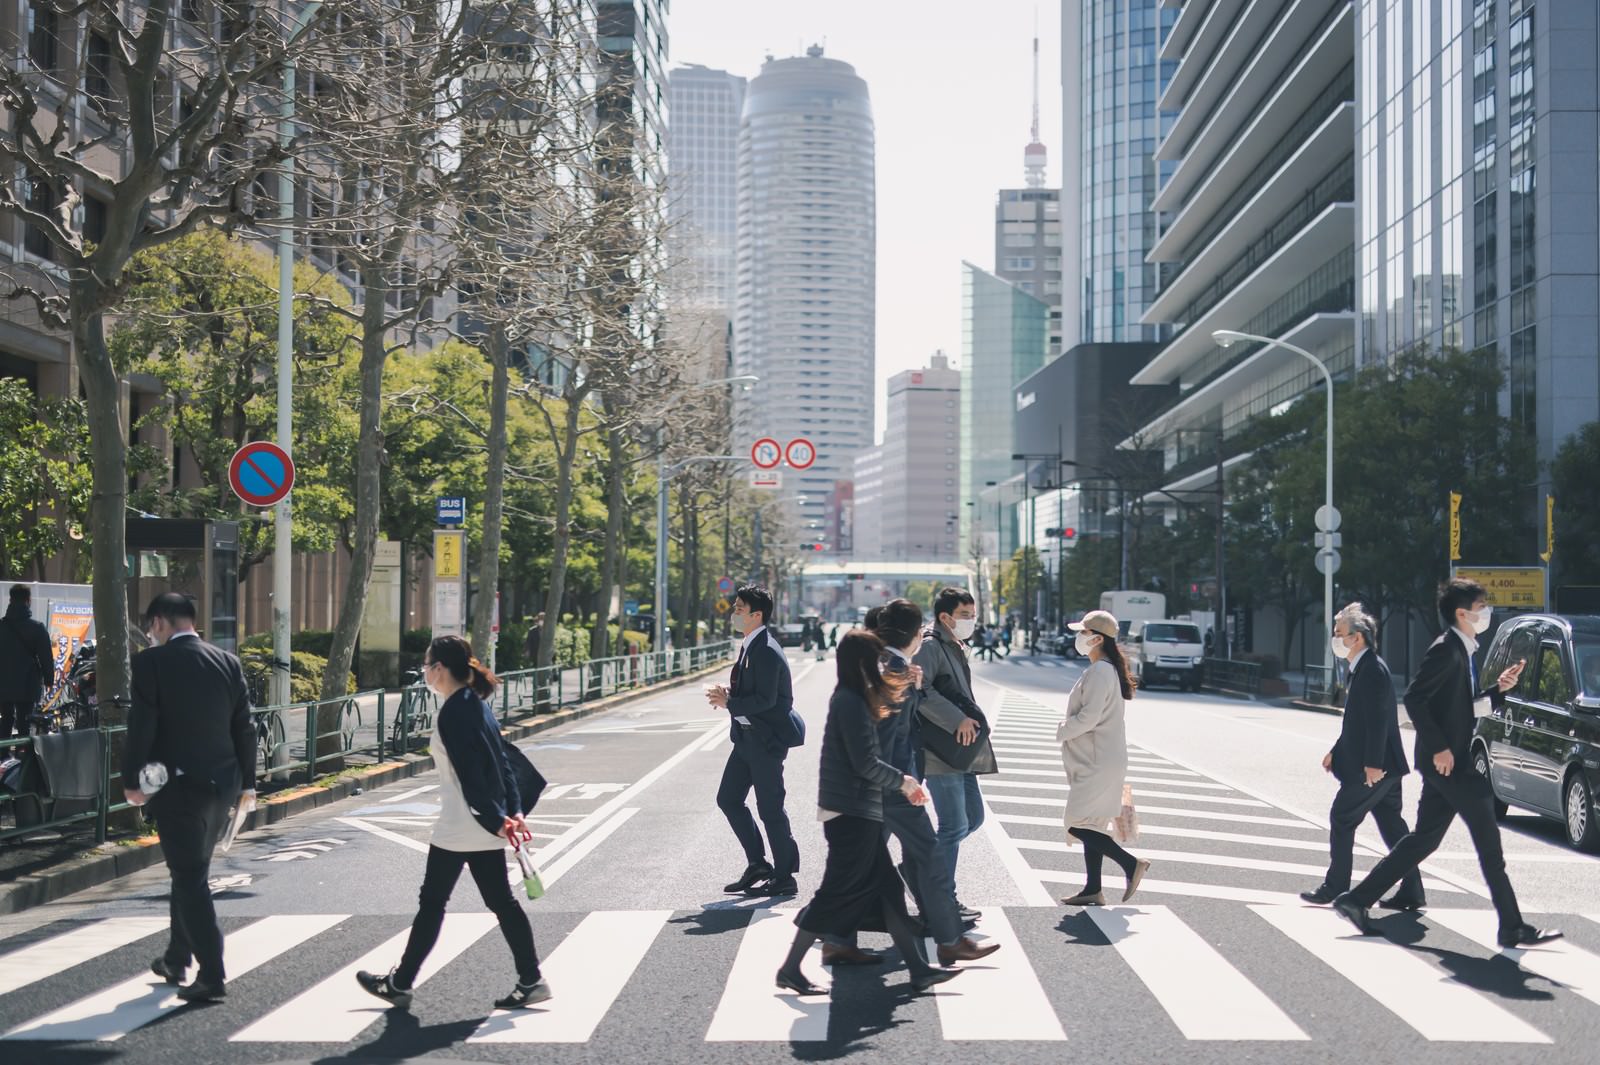 「オフィス街の横断歩道を渡る人たち」の写真